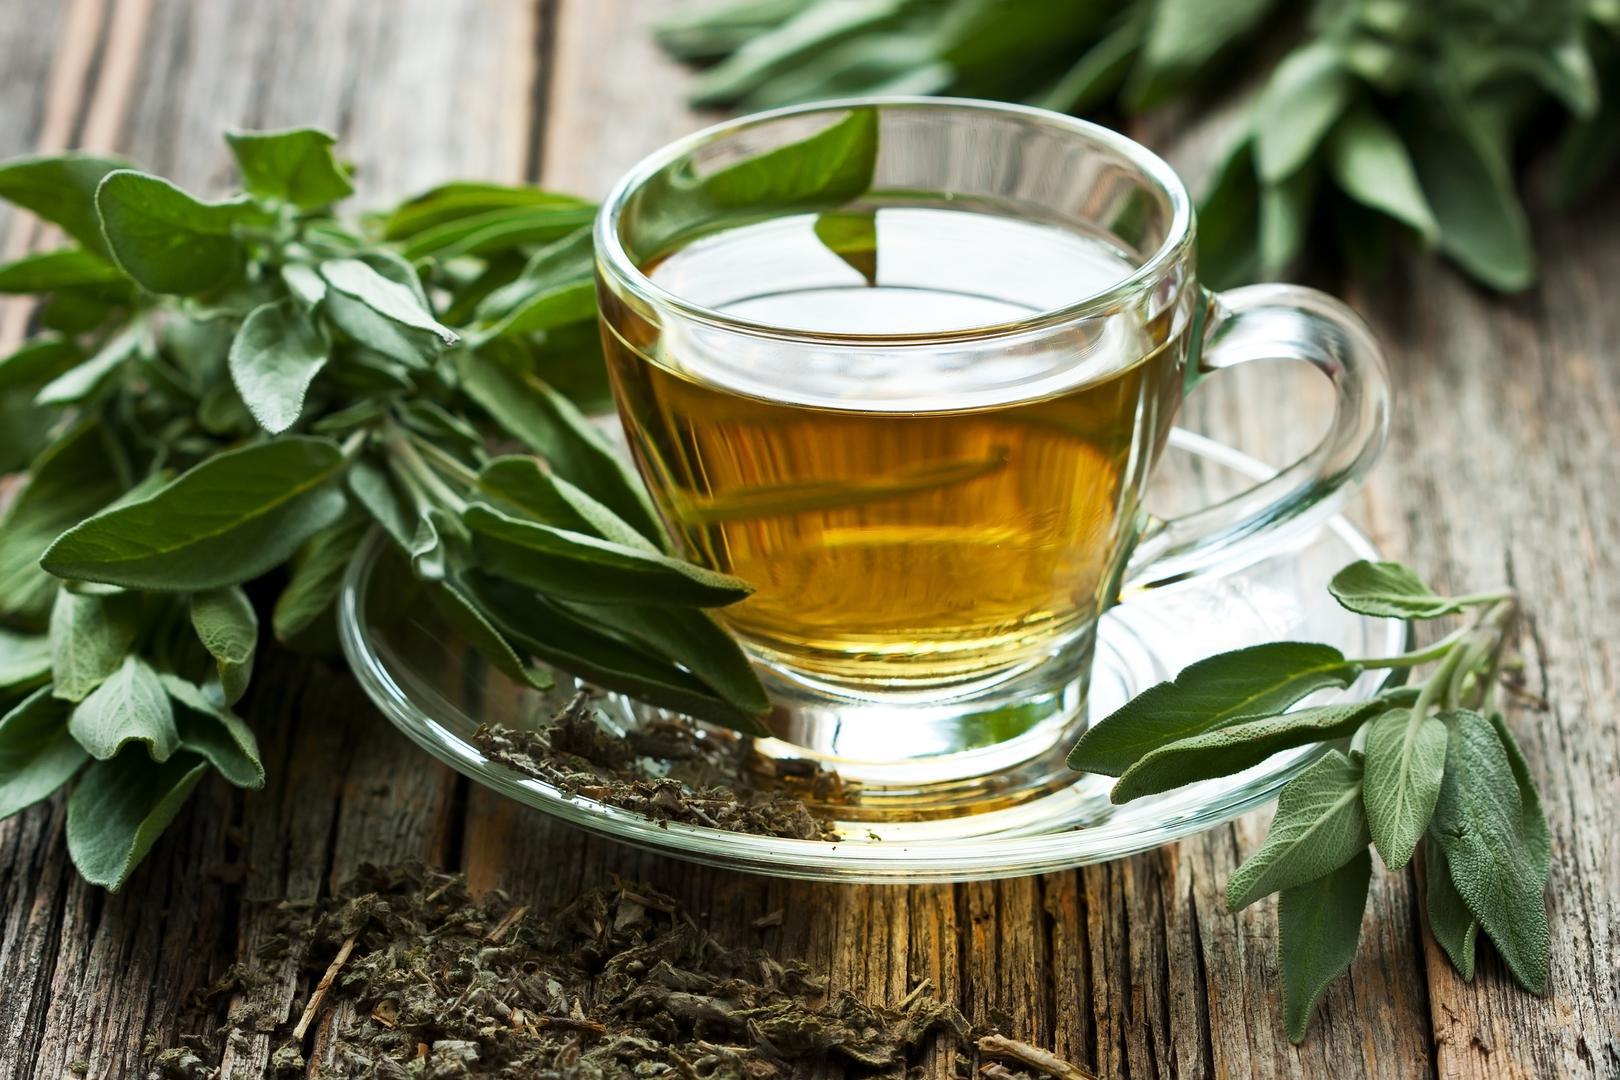 Zeleni čaj jedan je od najzdravijih napitaka na svijetu. Razbudit će vas, a sadrži poseban antioksidans poznat kao EGCE za koji je dokazano da štiti mozak, živčani sustav i srca od oštećenja.
